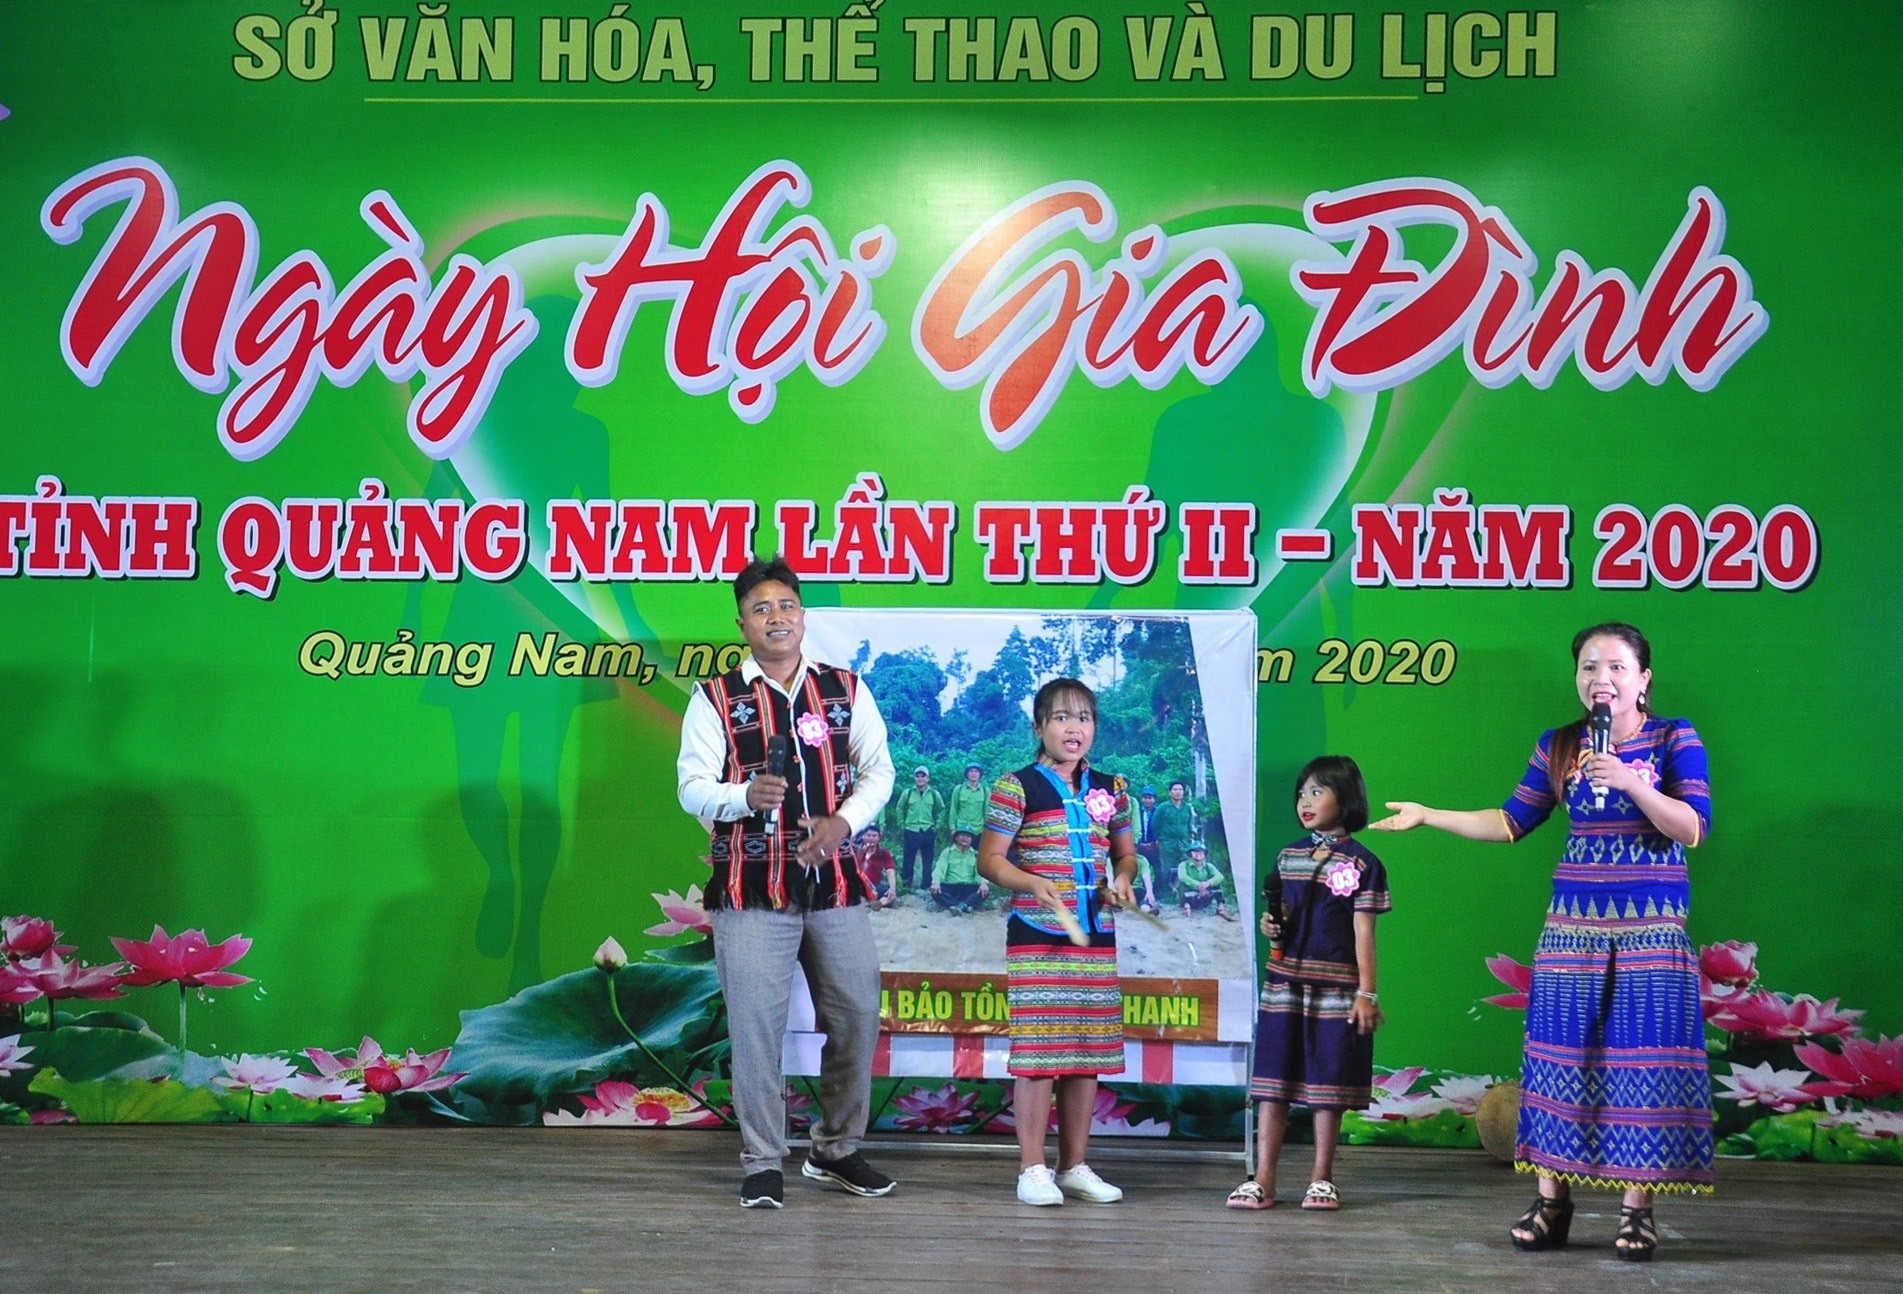 Gia đình anh Aviết Bưu đến từ huyện Nam Giang giành giải Nhất tại Ngày hội Gia đình Quảng Nam lần thứ II - năm 2020. Ảnh: VINH ANH